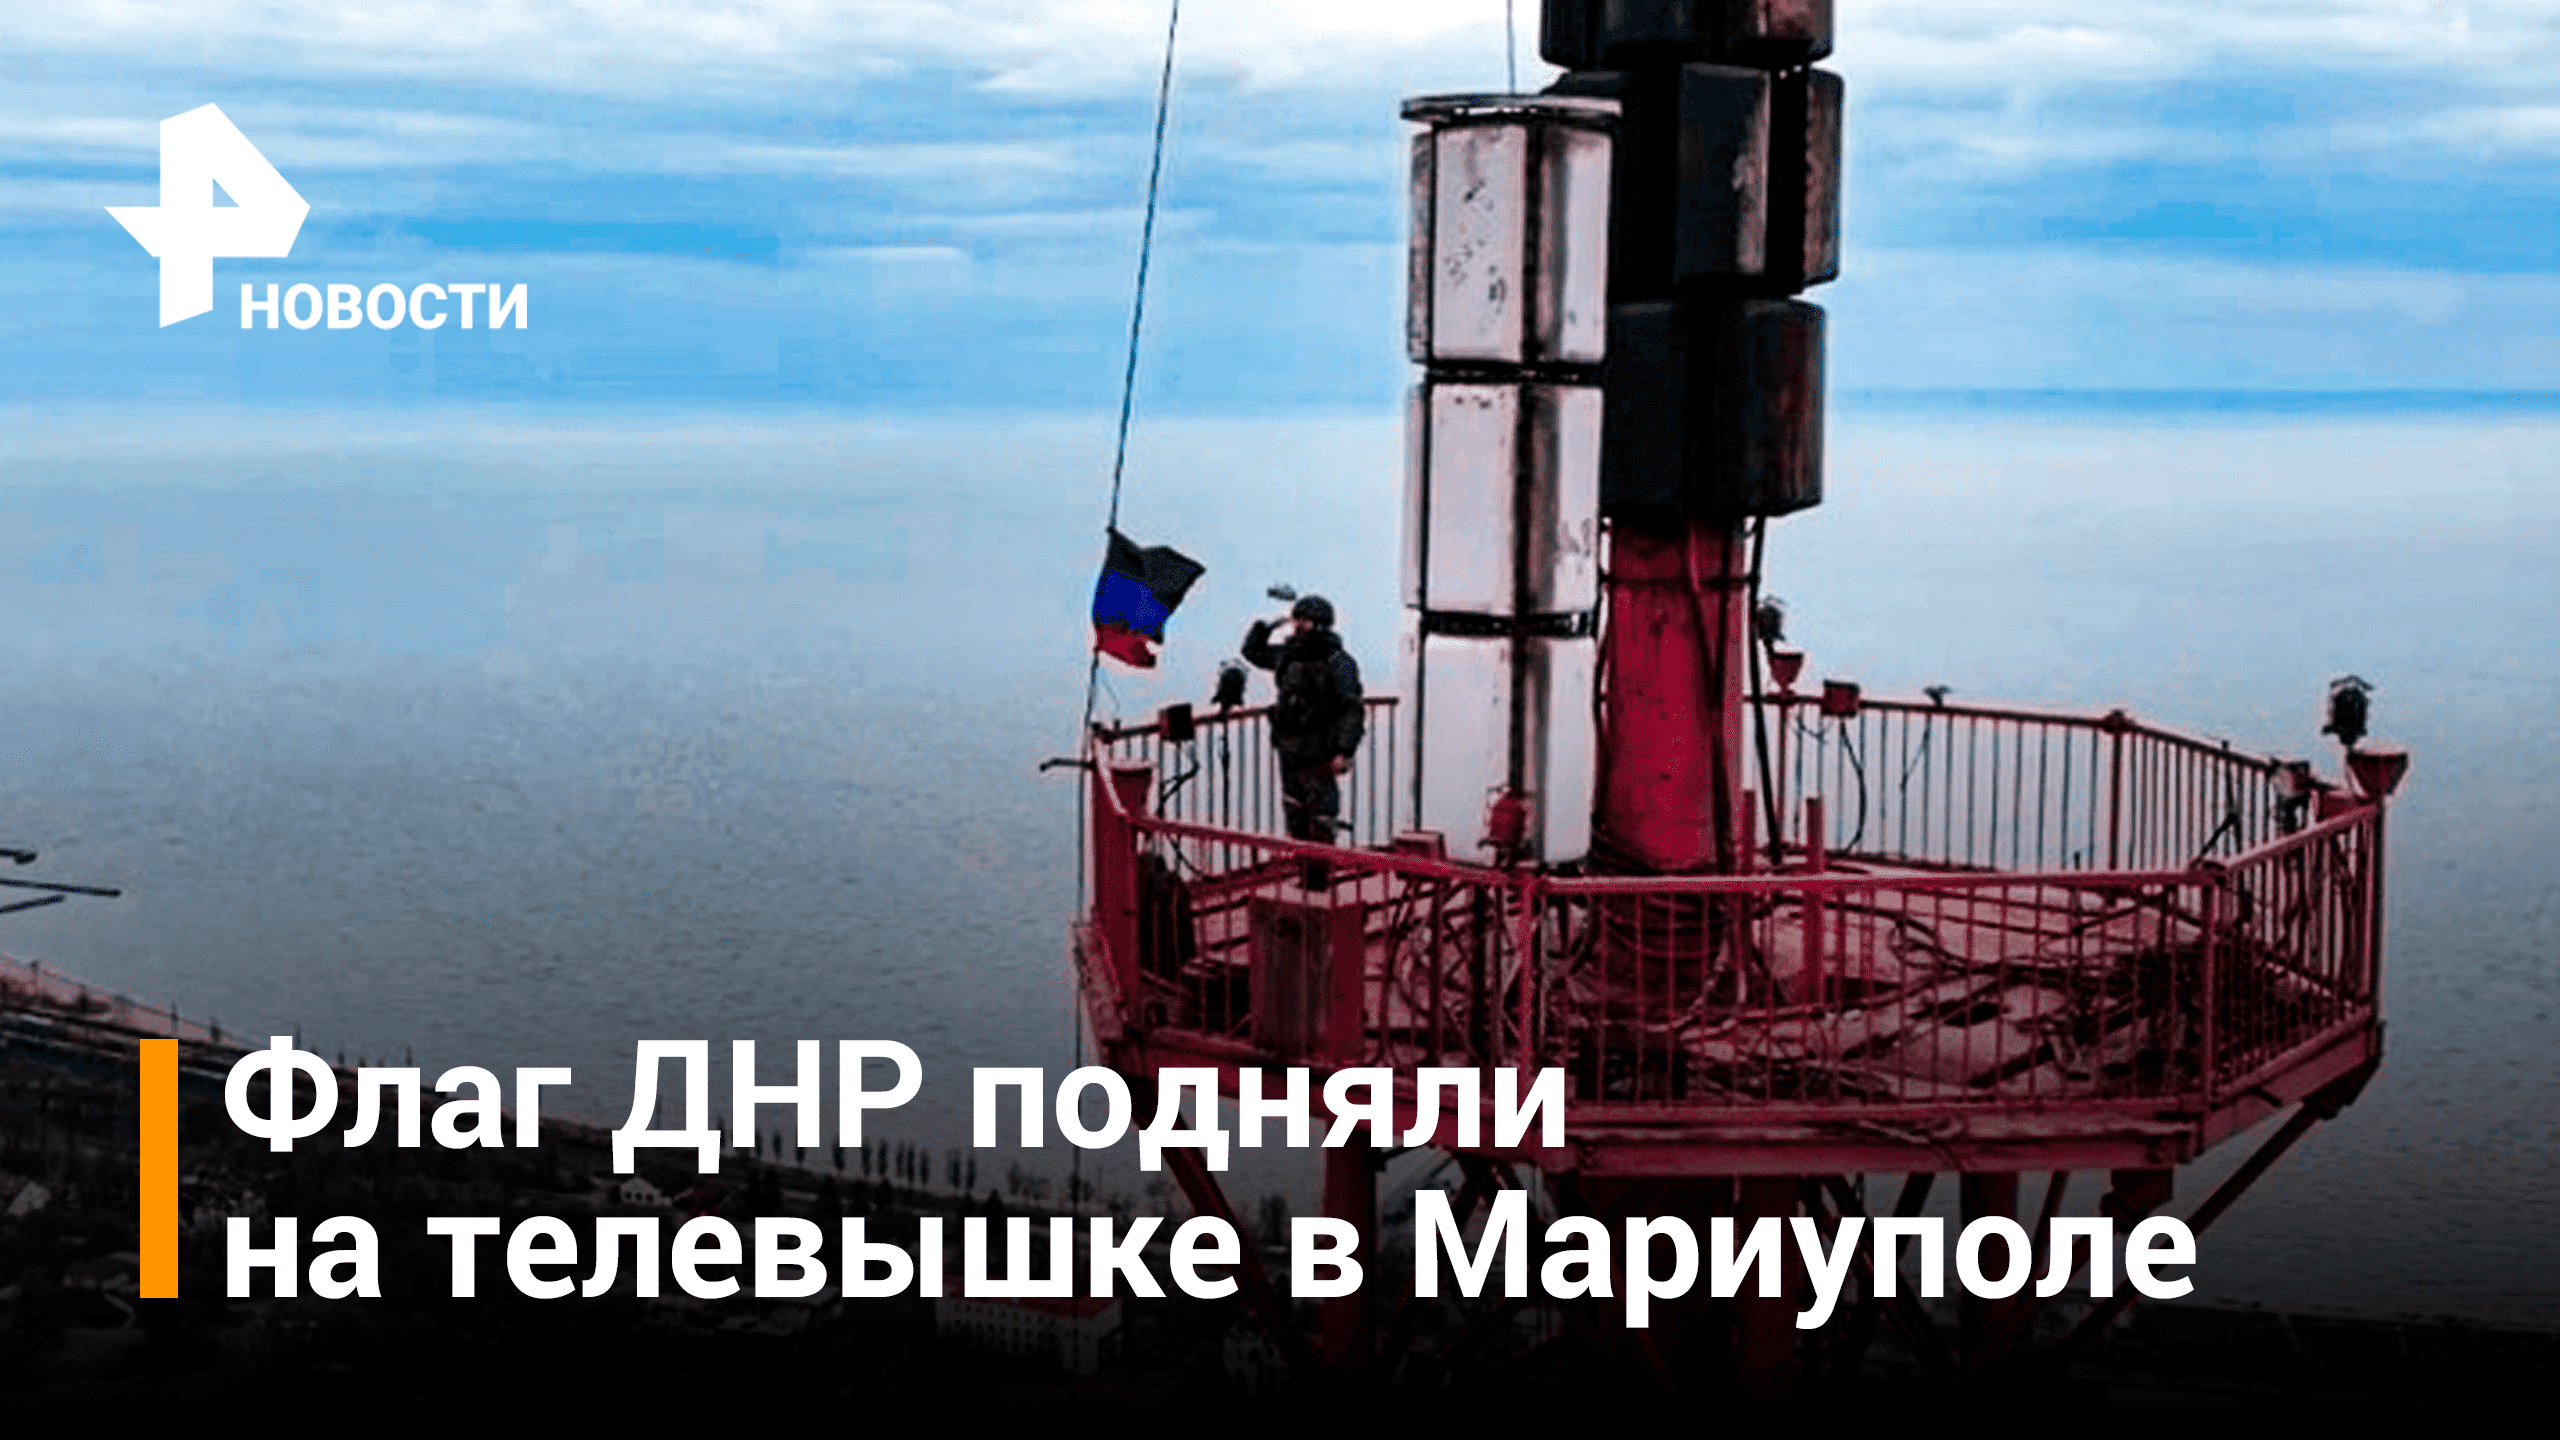 Флаг ДНР поднят на телевышке Мариуполя / РЕН Новости